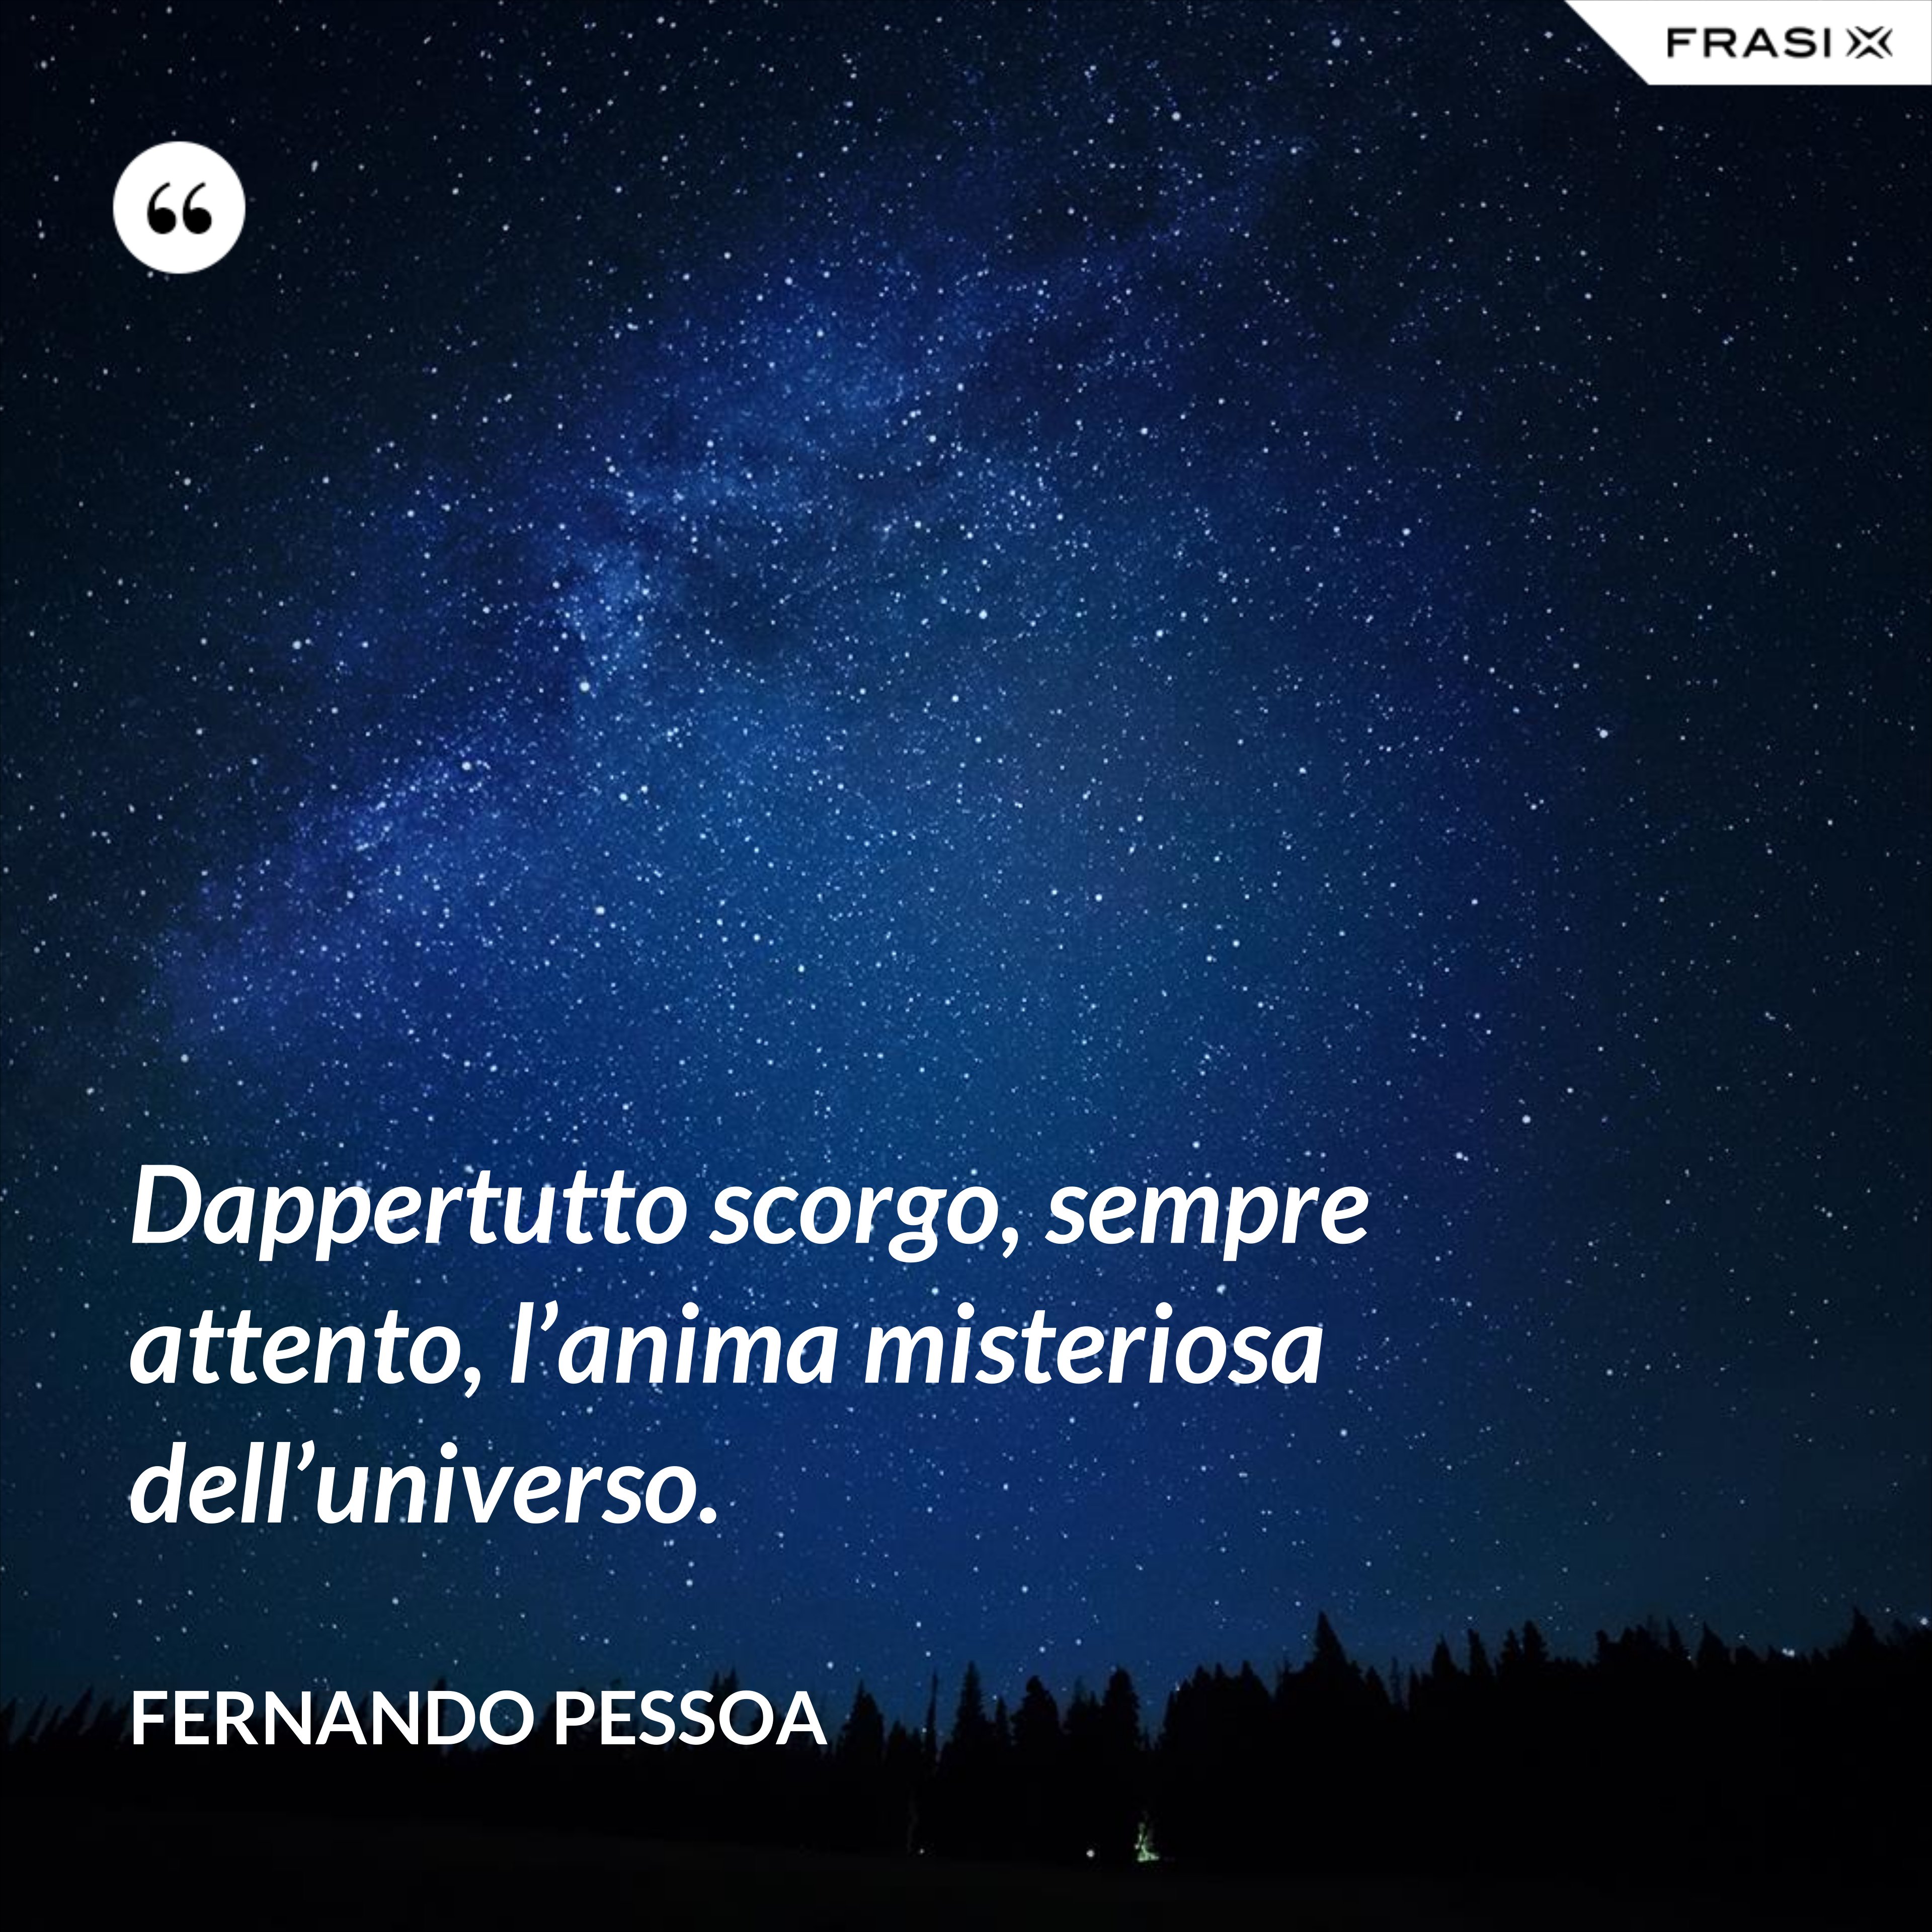 Dappertutto scorgo, sempre attento, l’anima misteriosa dell’universo. - Fernando Pessoa